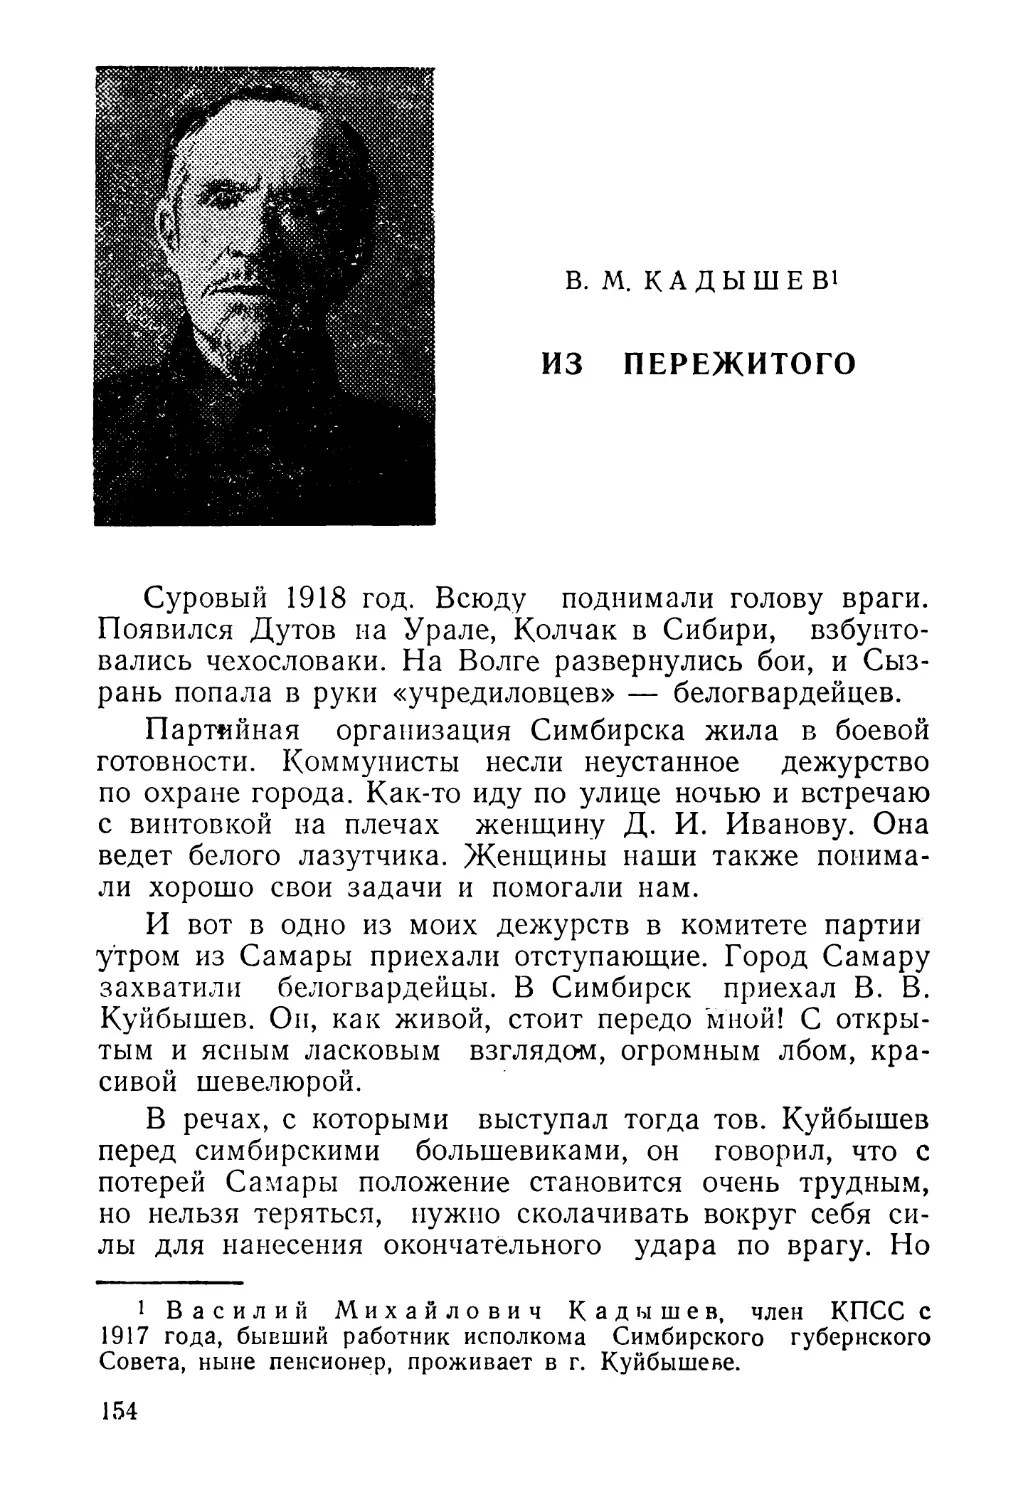 B. М. Кадышев. Из пережитого